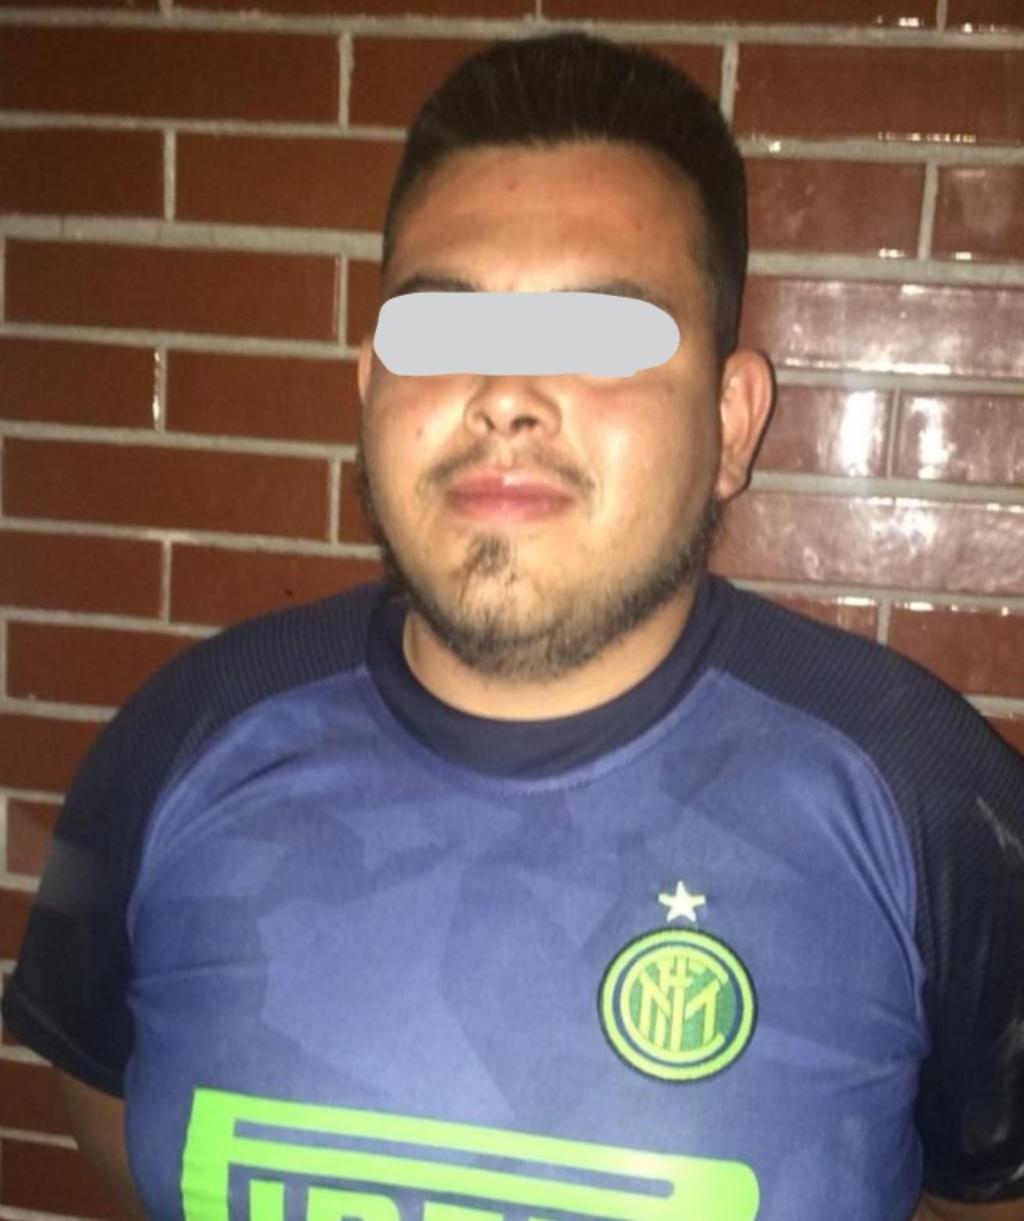 El presunto asaltante fue identificado como Silvestre N., de 25 años de edad, quien fue detenido en la confluencia de los bulevares Miguel Alemán y González de la Vega. (ESPECIAL)
